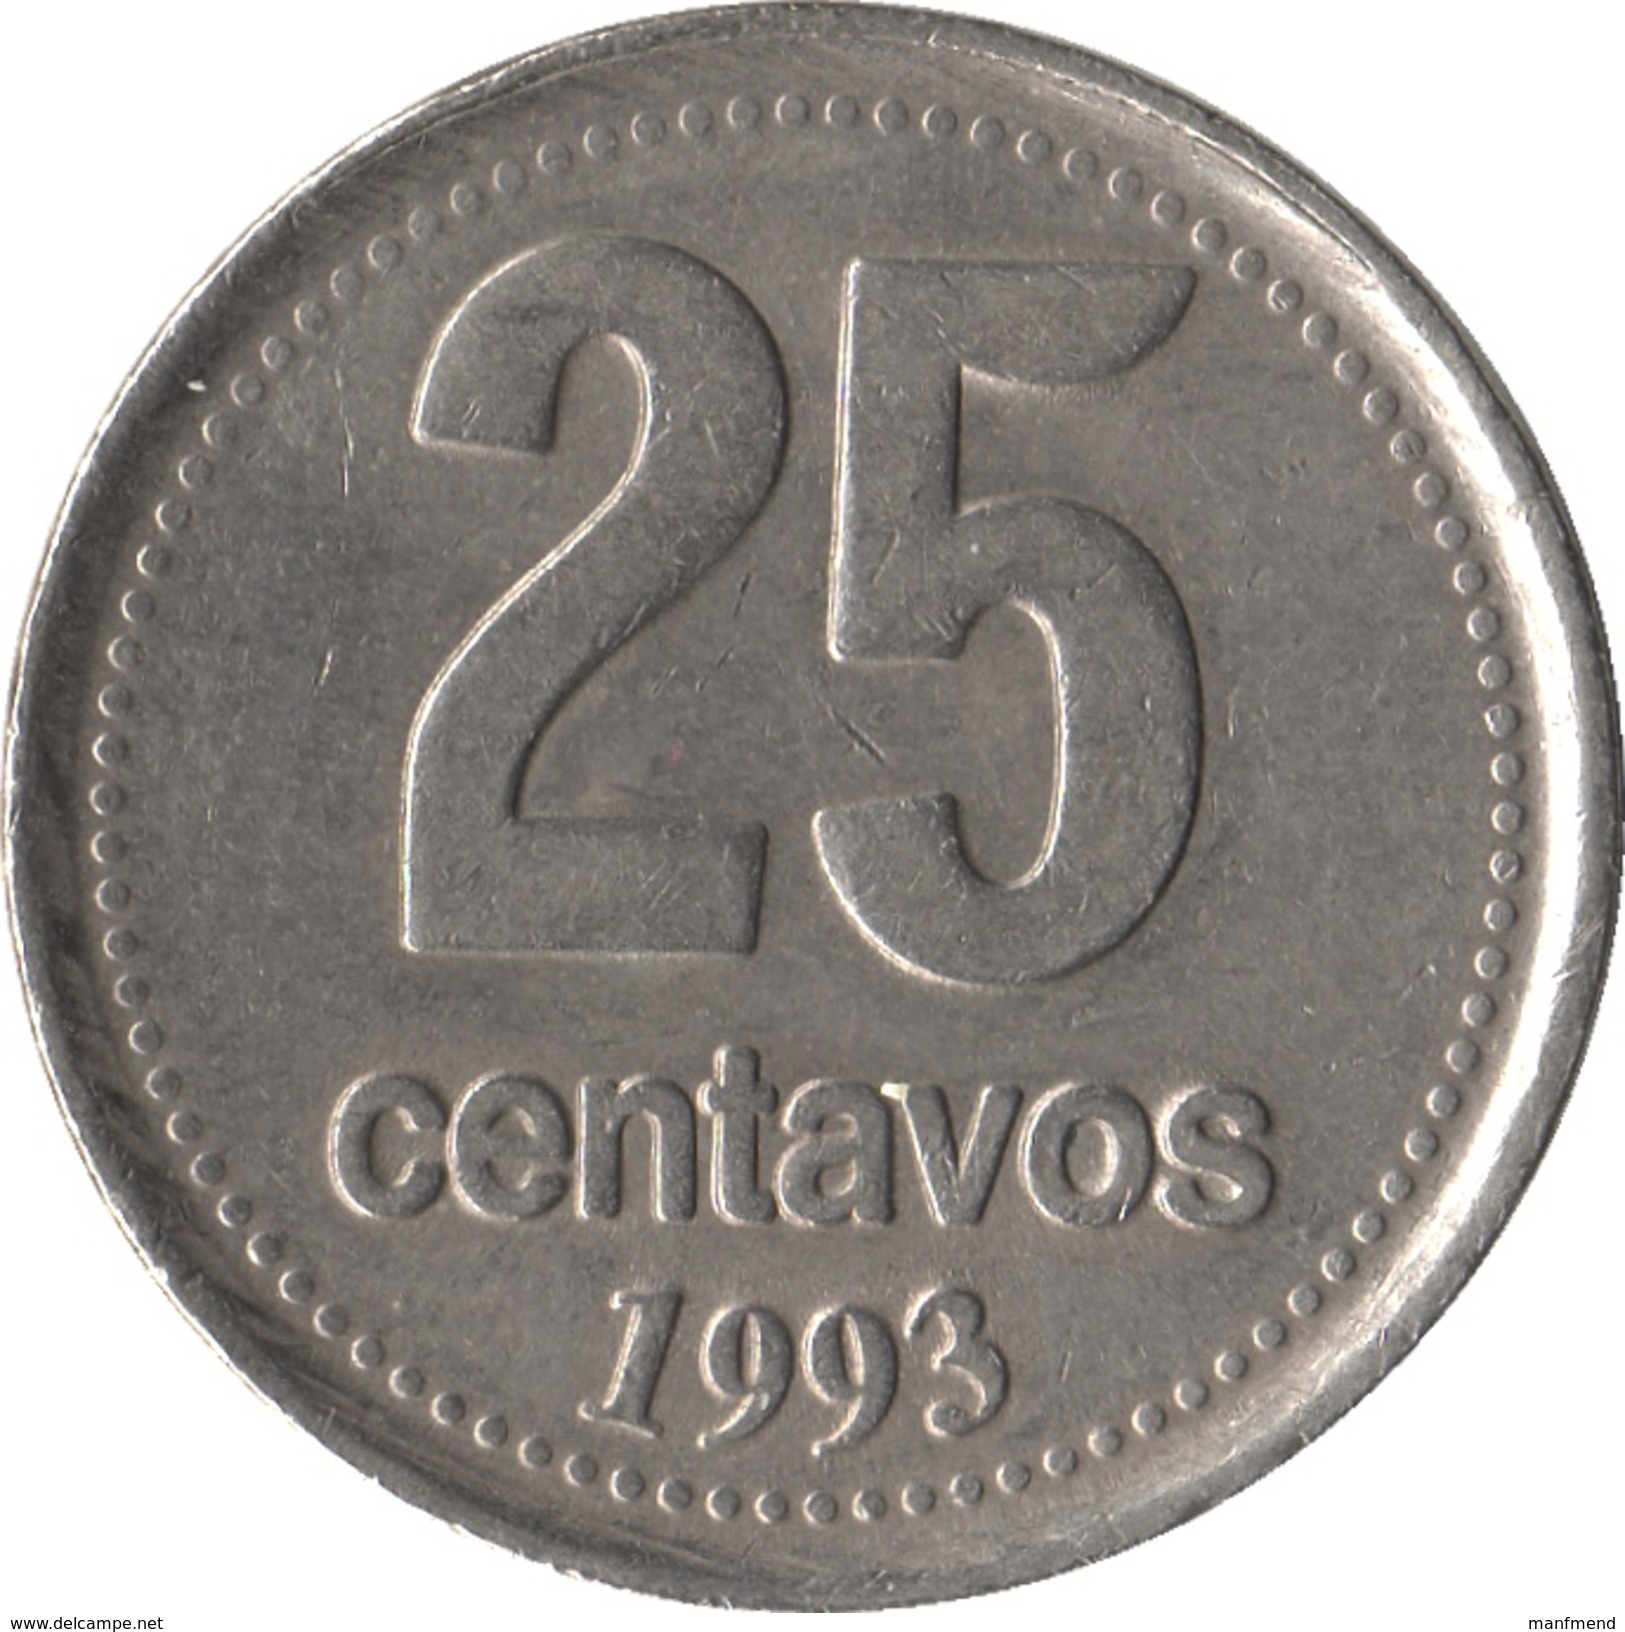 Argentina - 1993 - 25 Centavos - KM 110a - XF - Argentine